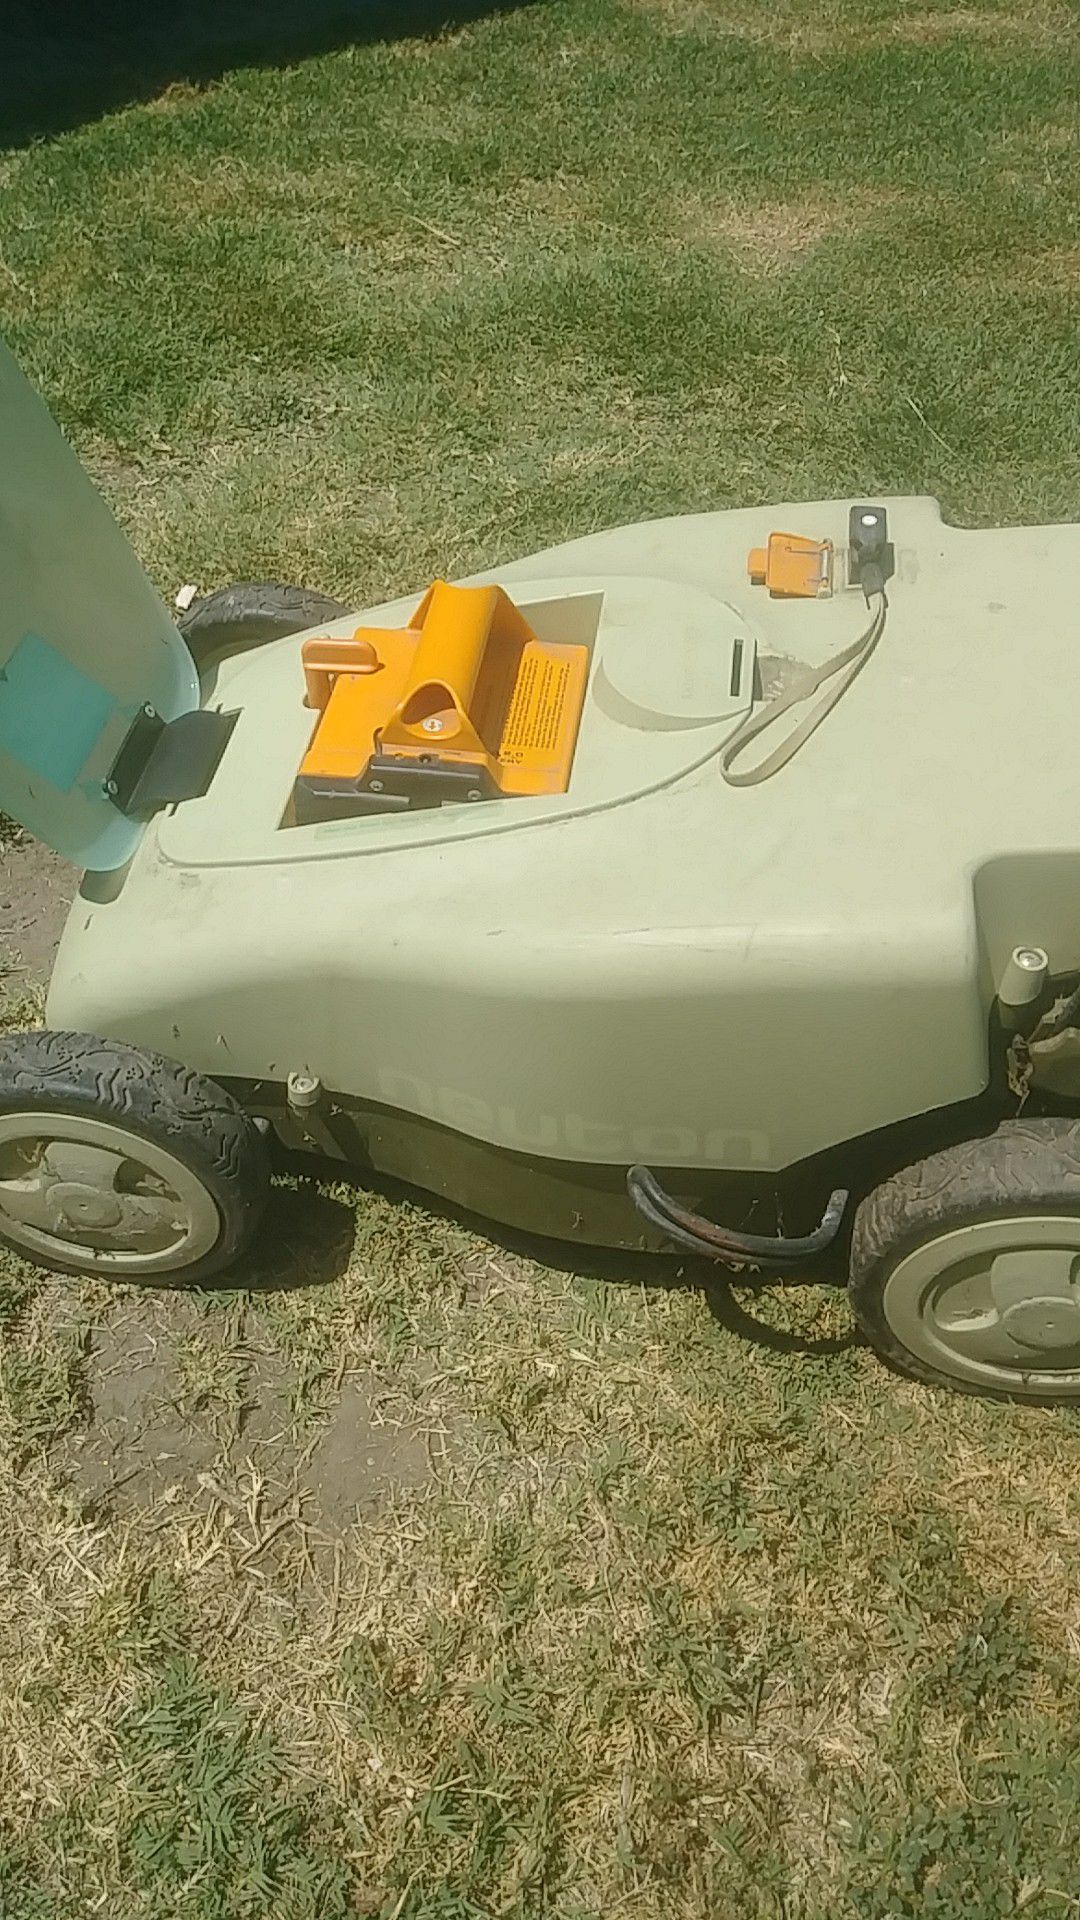 Nueton electric lawn mower